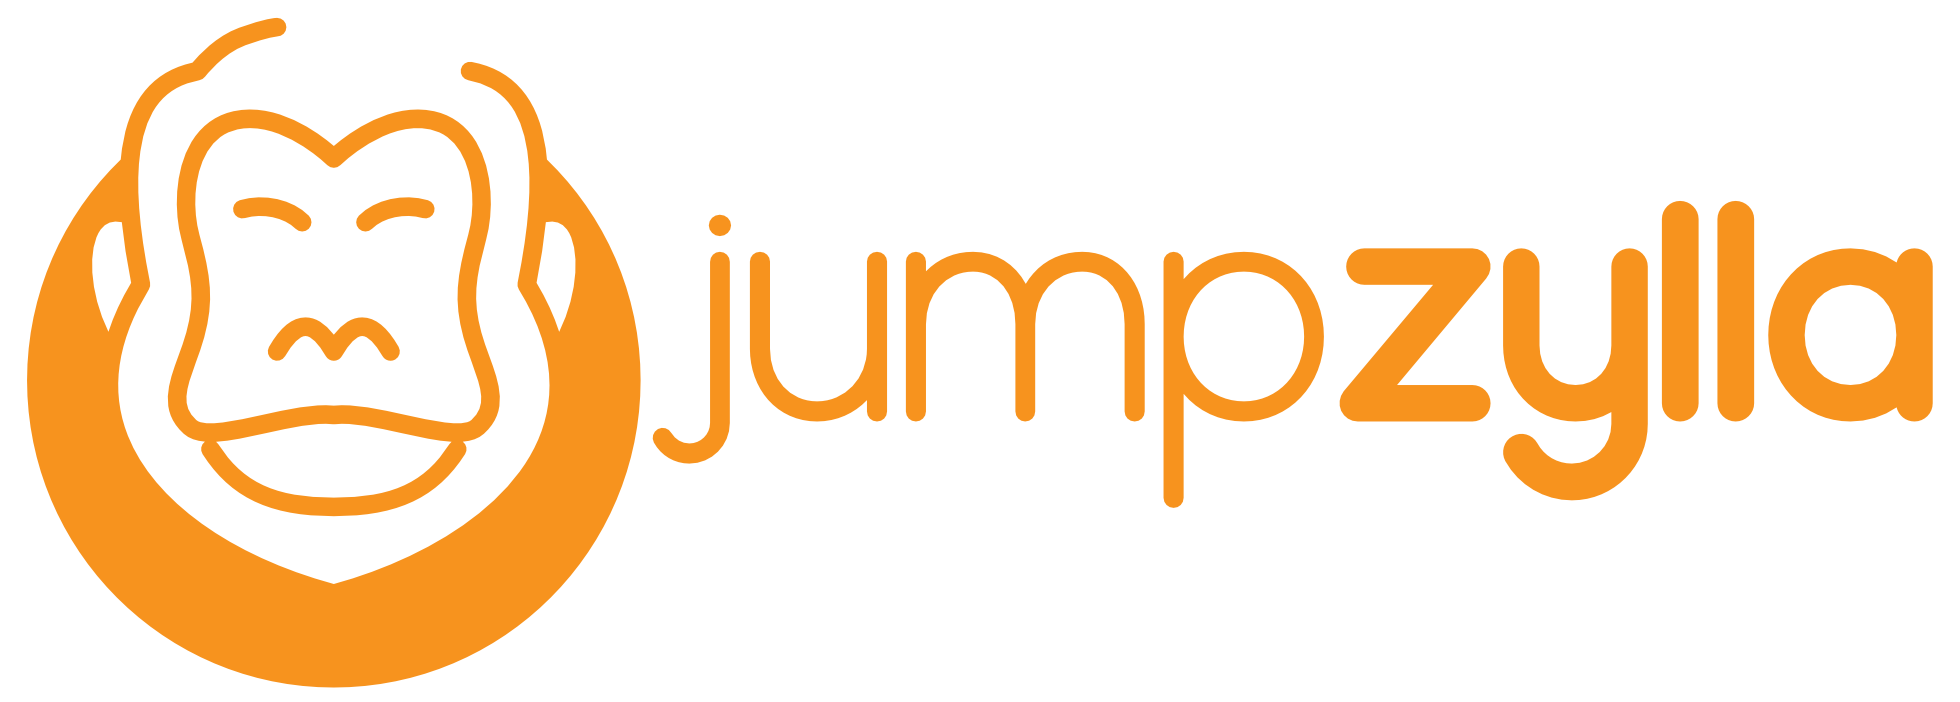 Jumpzylla logo